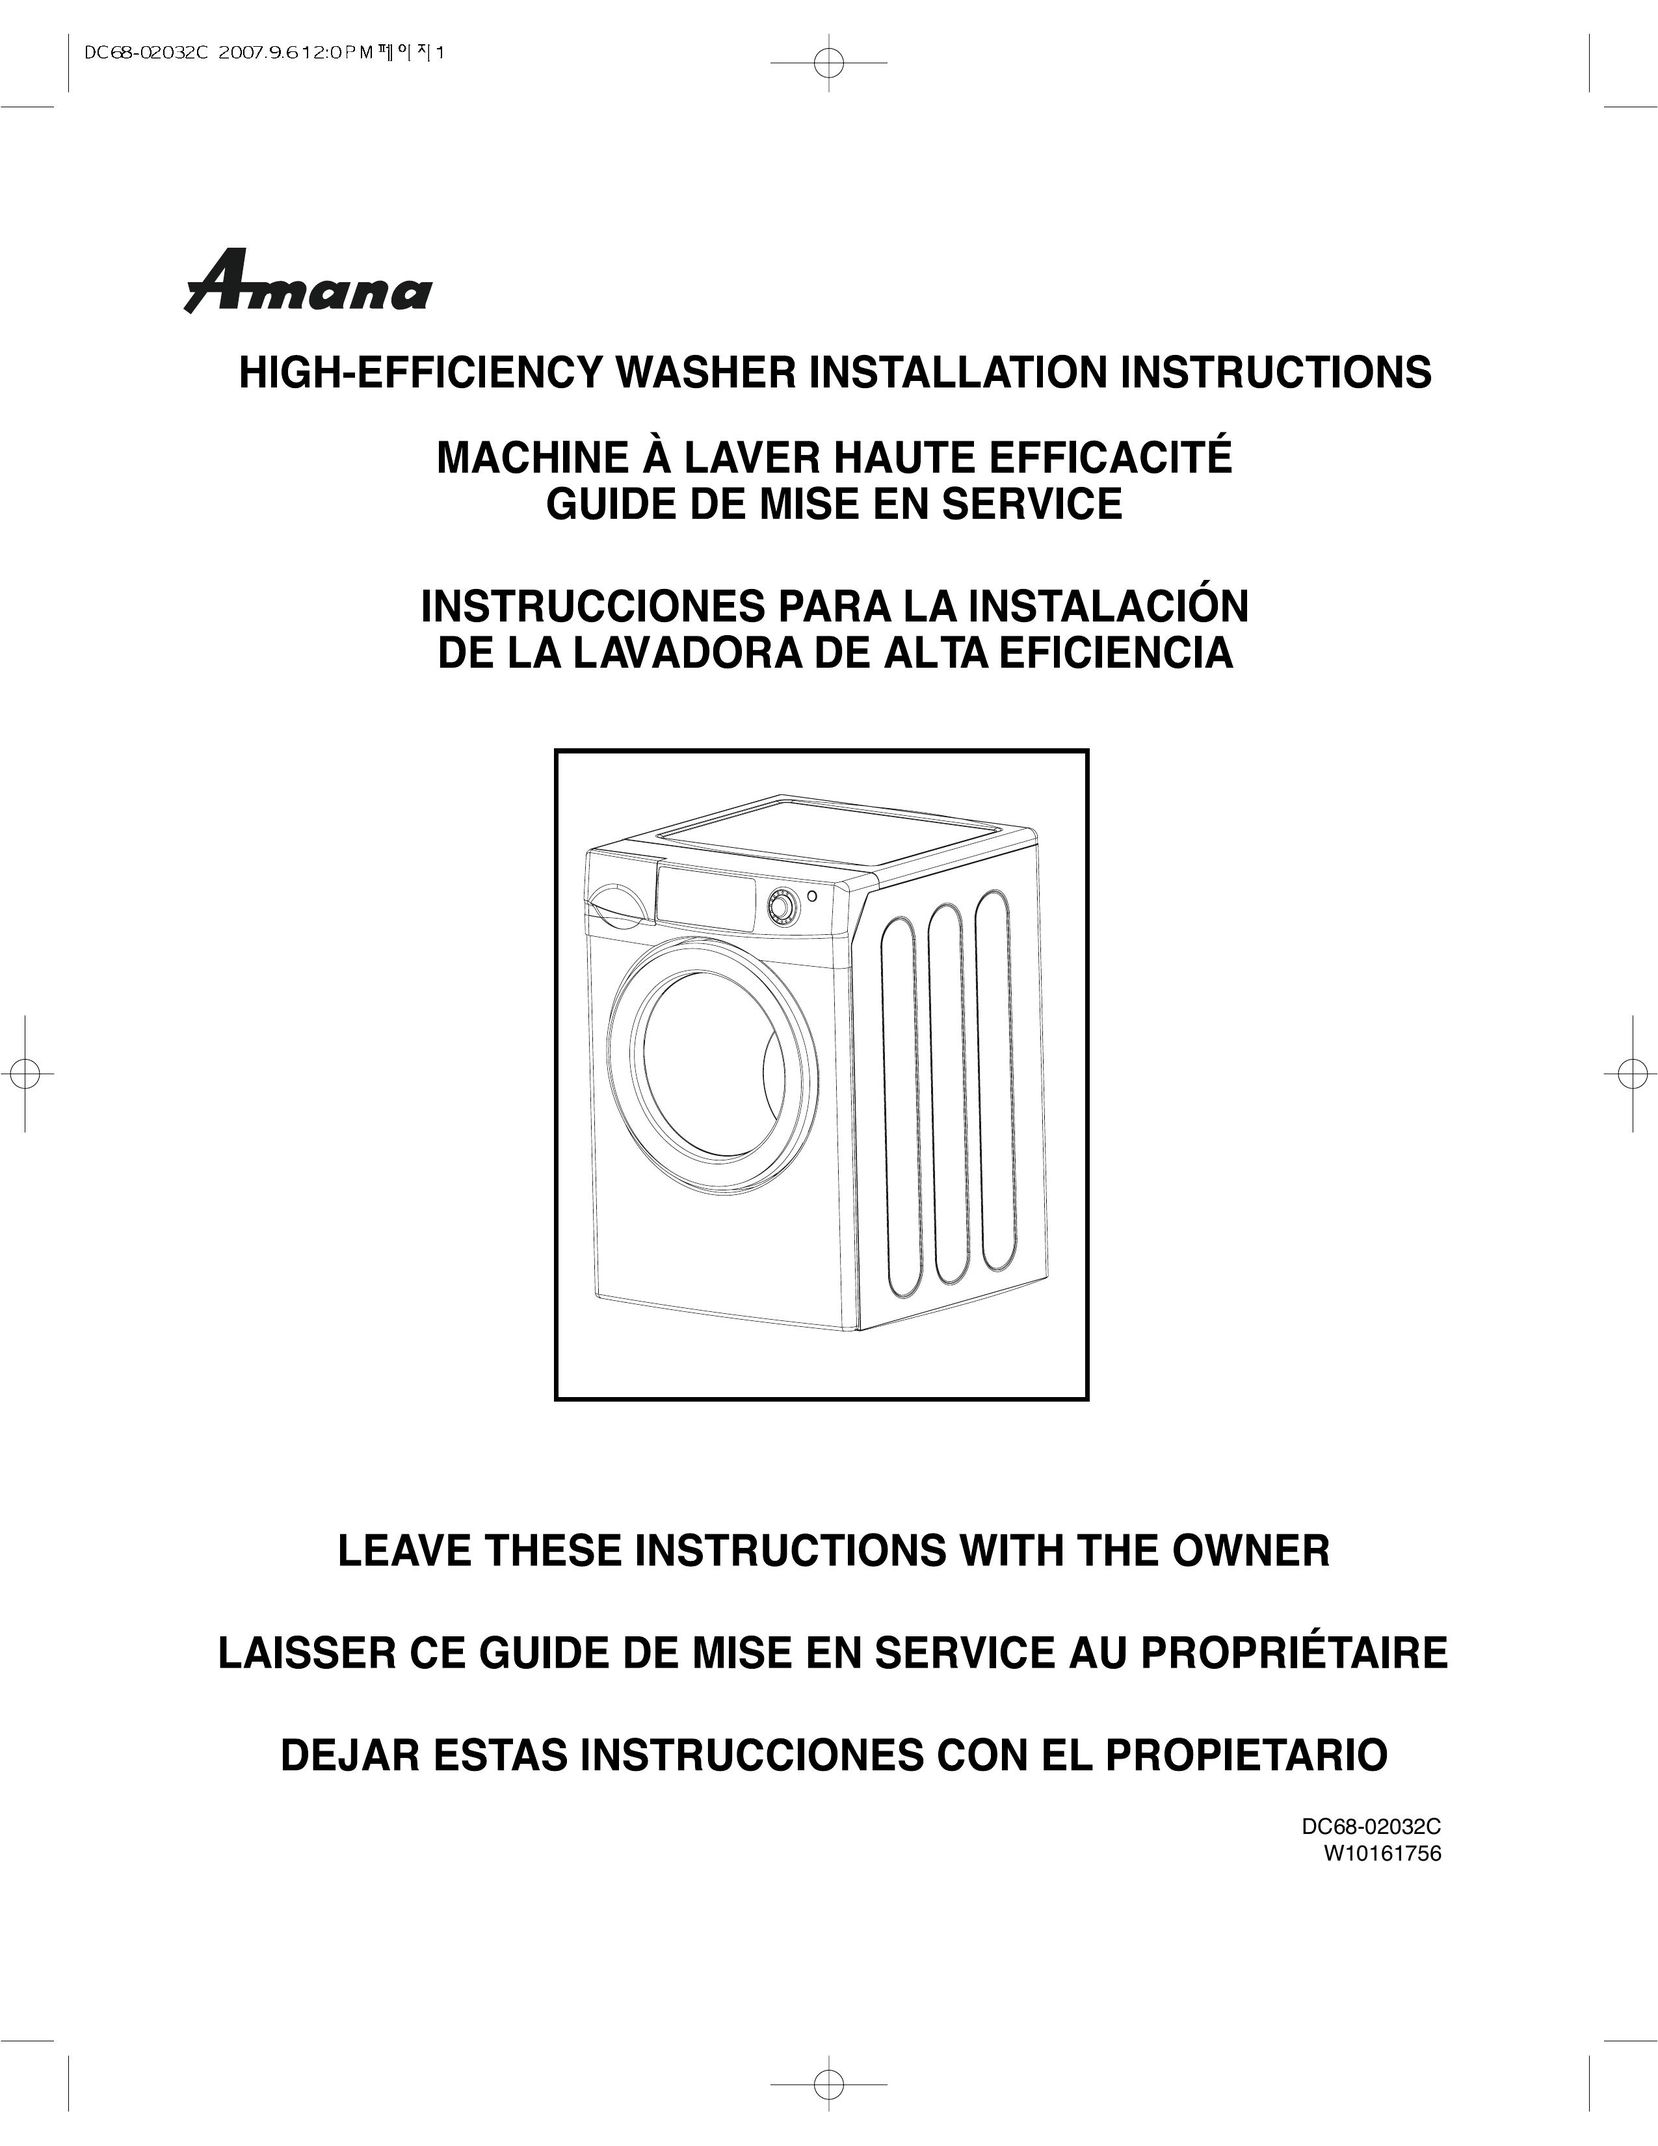 Amana DC68-02032C Freezer User Manual